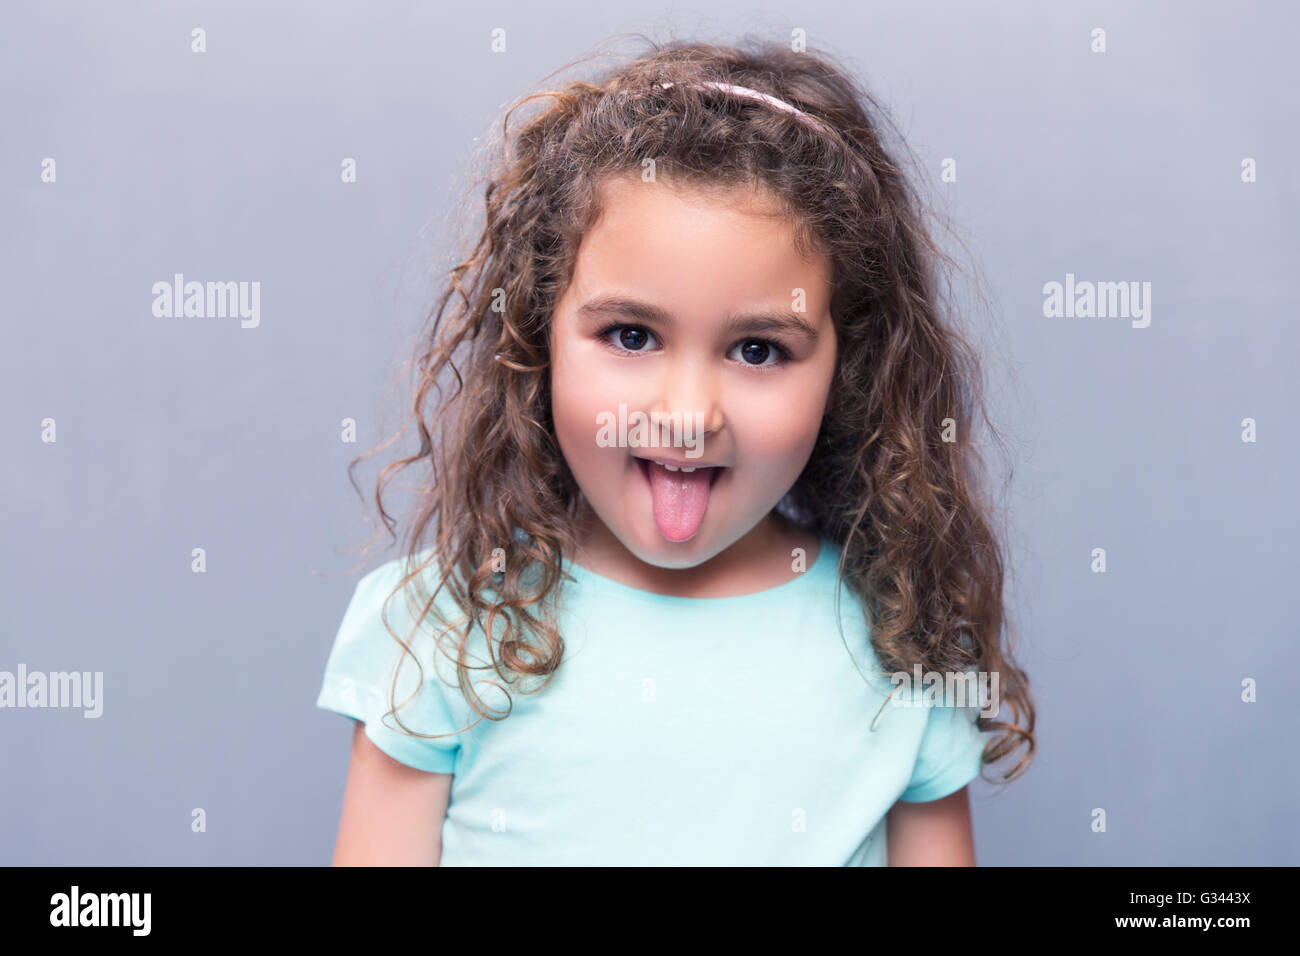 Porträt der kleine süße Mädchen mit dem lockigen Haar zeigt Zunge in die Kamera. Studio gedreht Stockfoto